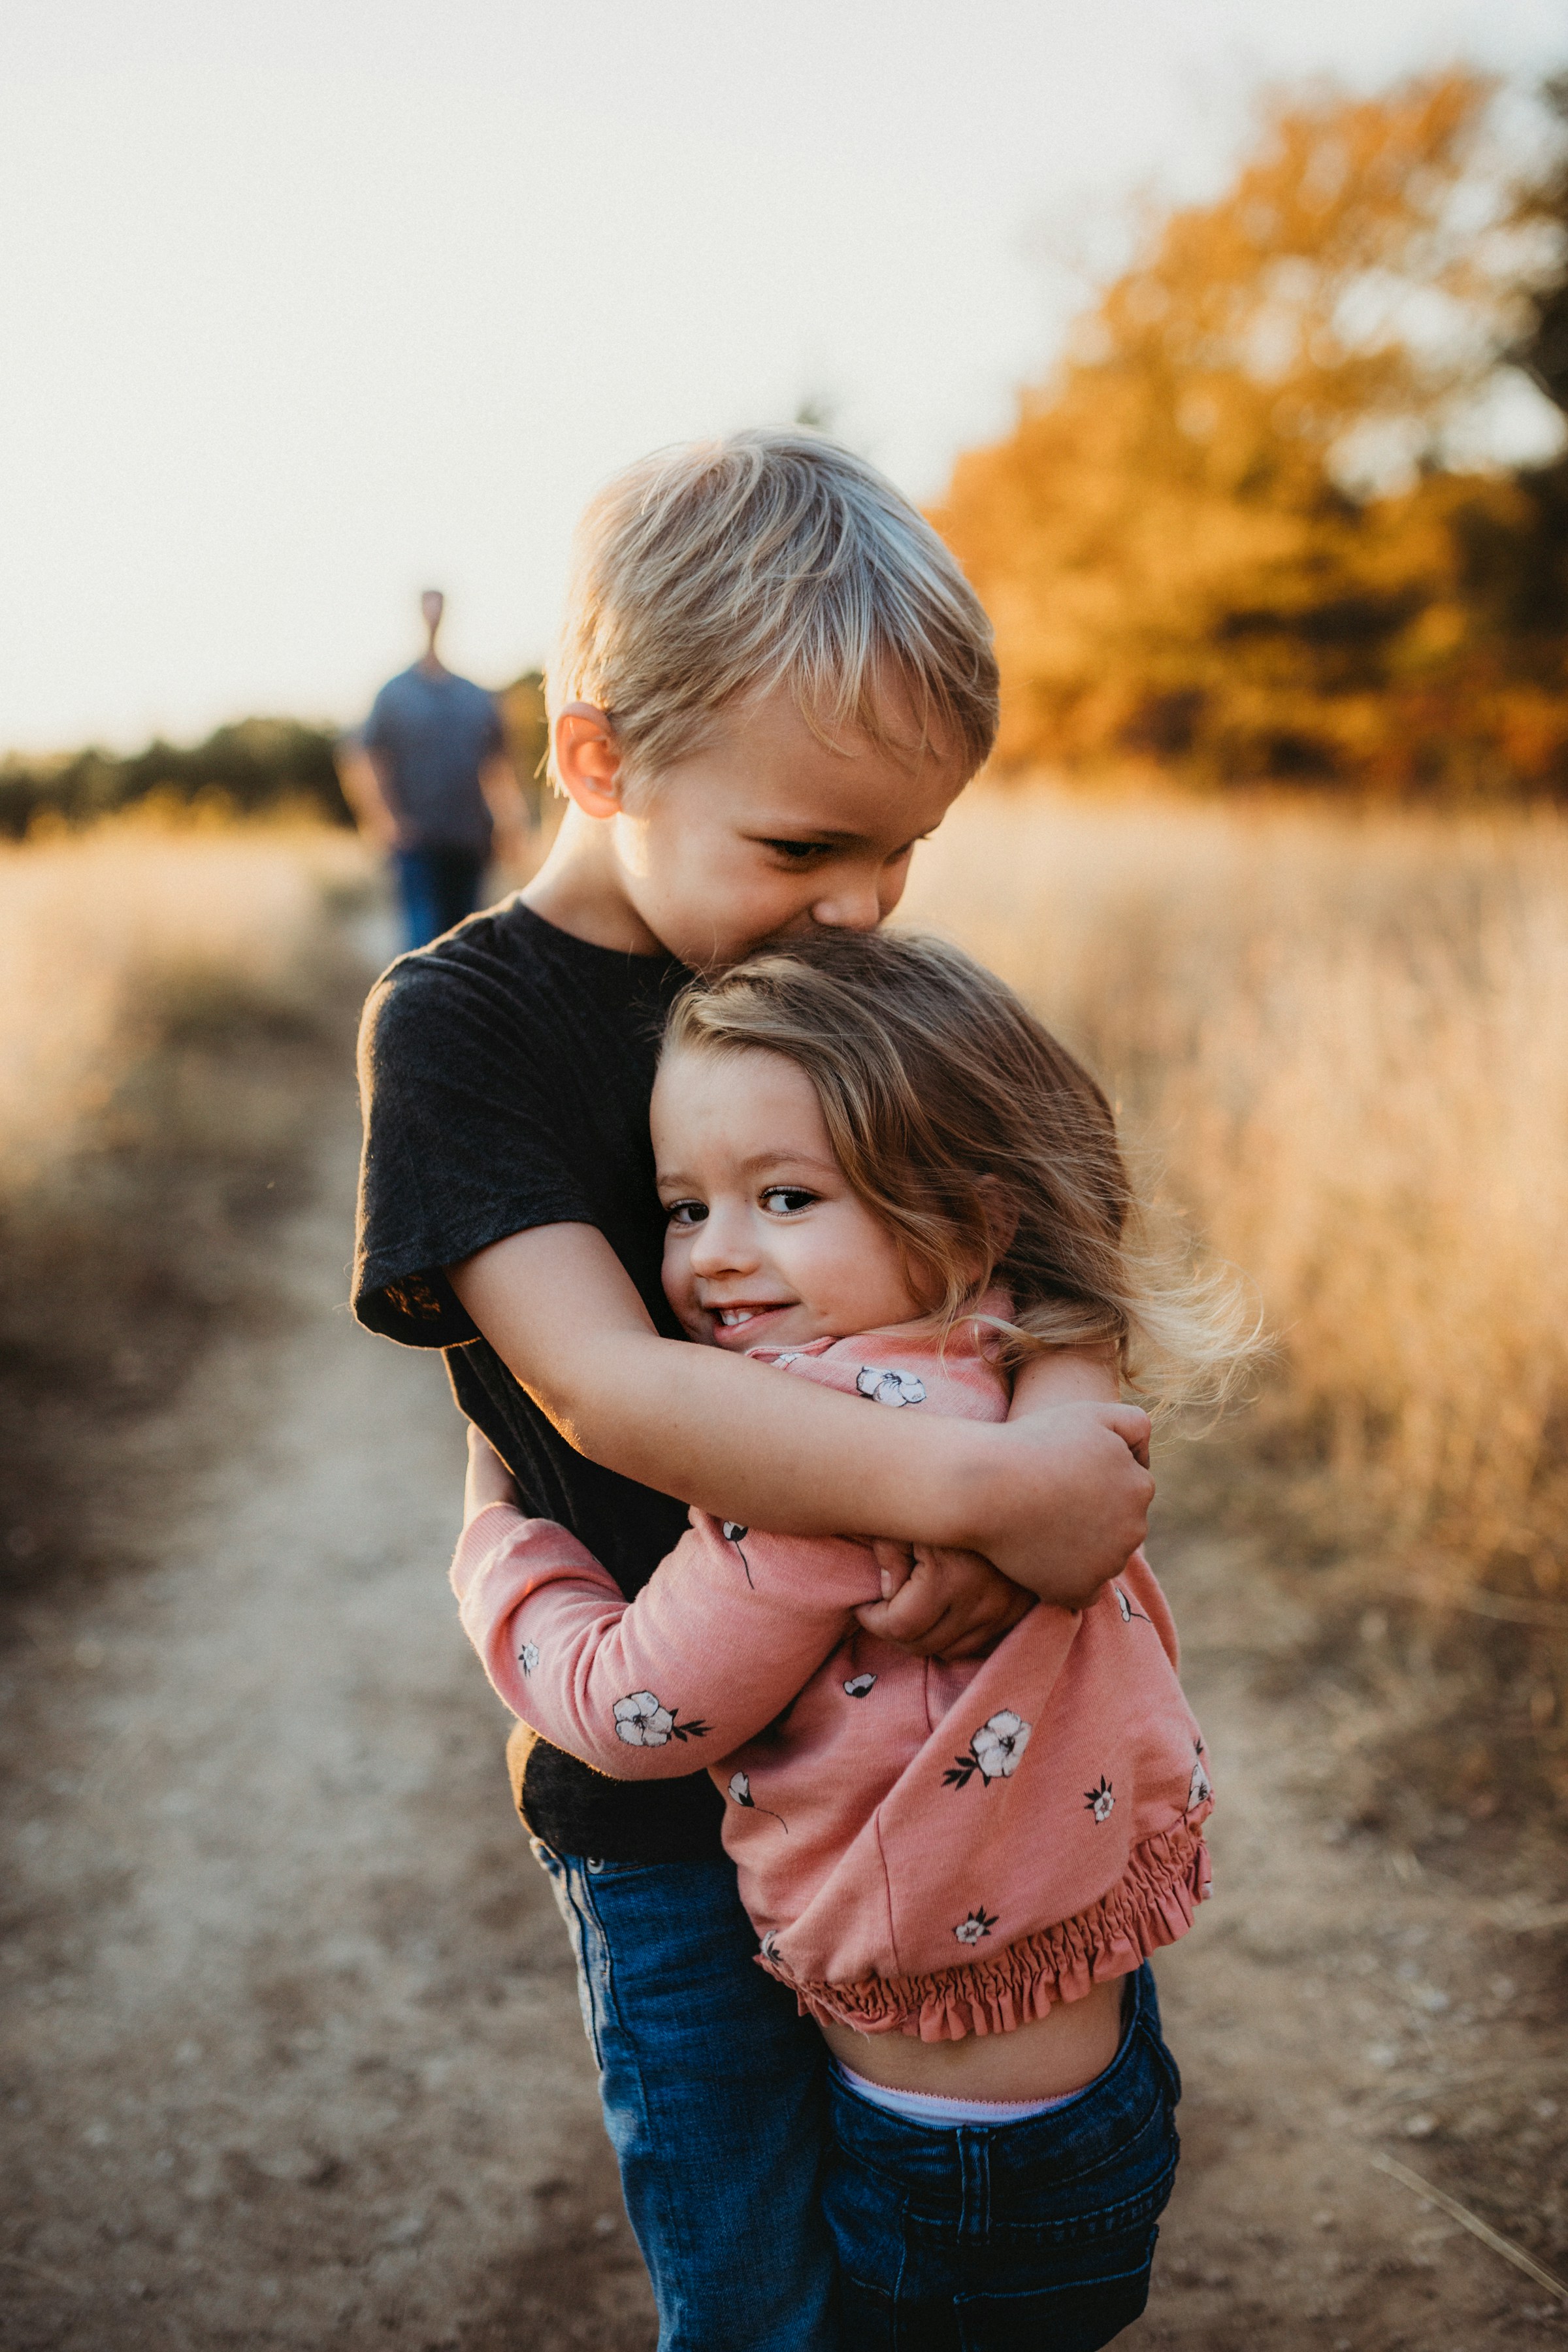 Un hermano mayor abrazando a su hermana pequeña | Fuente: Unsplash